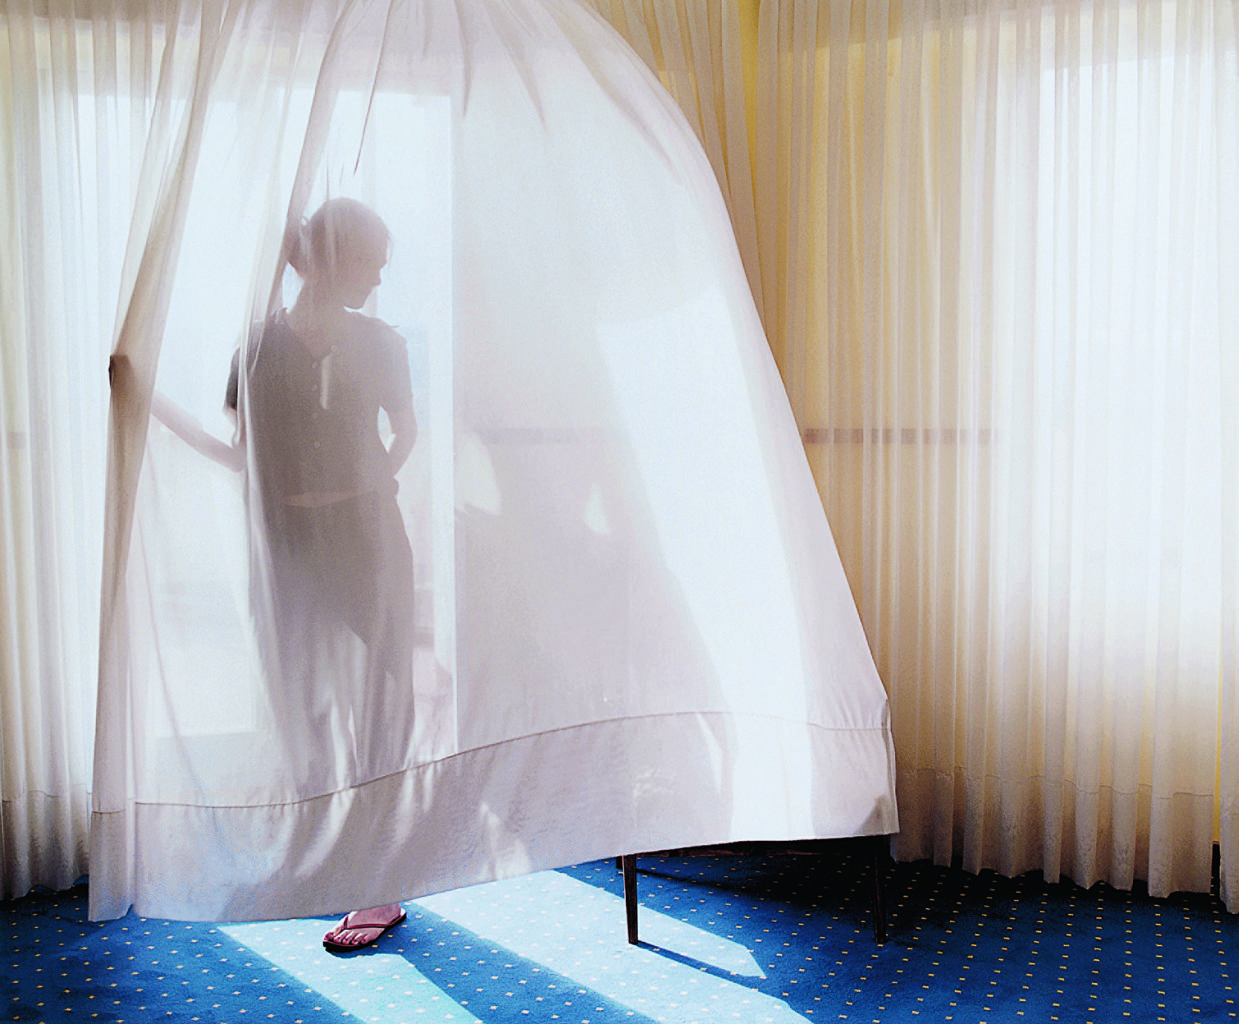 Aino Kannisto, Untitled (Translucent Curtain), 2002, Galerie m Bochum © Aino Kannisto, courtesy: Galerie m Bochum